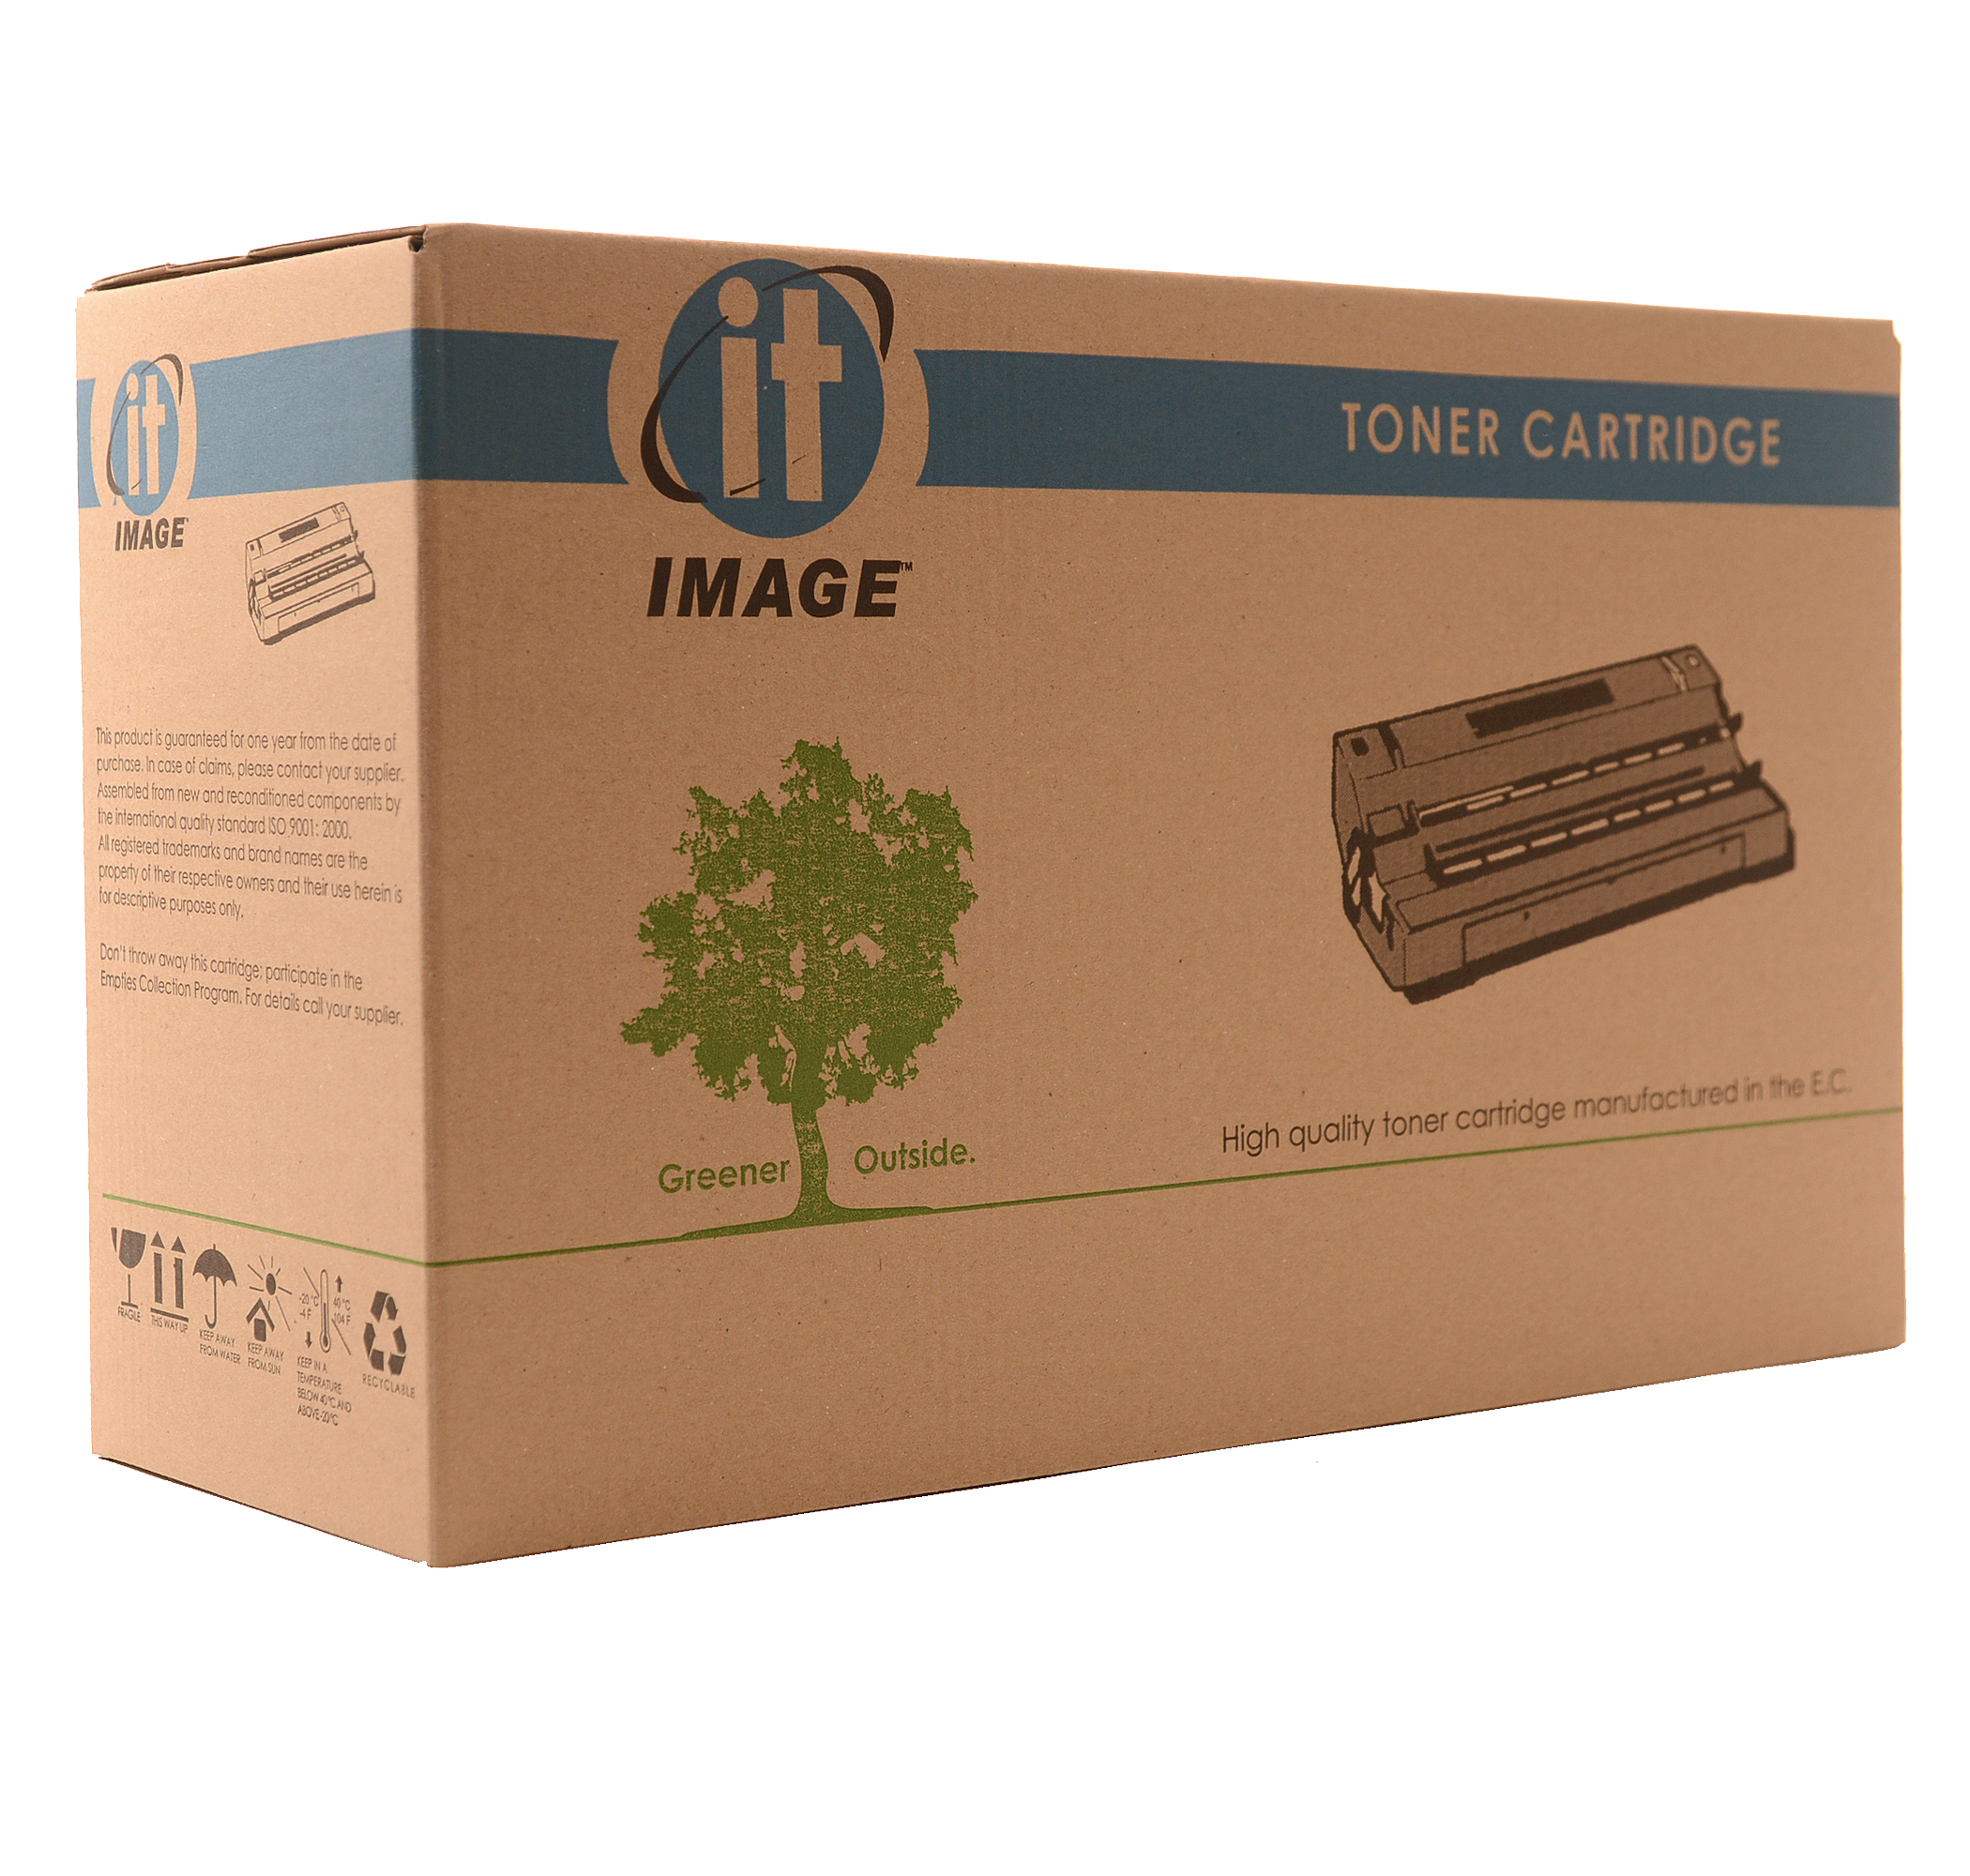 съвместима тонер касета за принтери и печатащи устройства на Canon i-SENSYS MF421 Cartridge 052K. Ниски цени, прецизно изпълнение, високо качество.